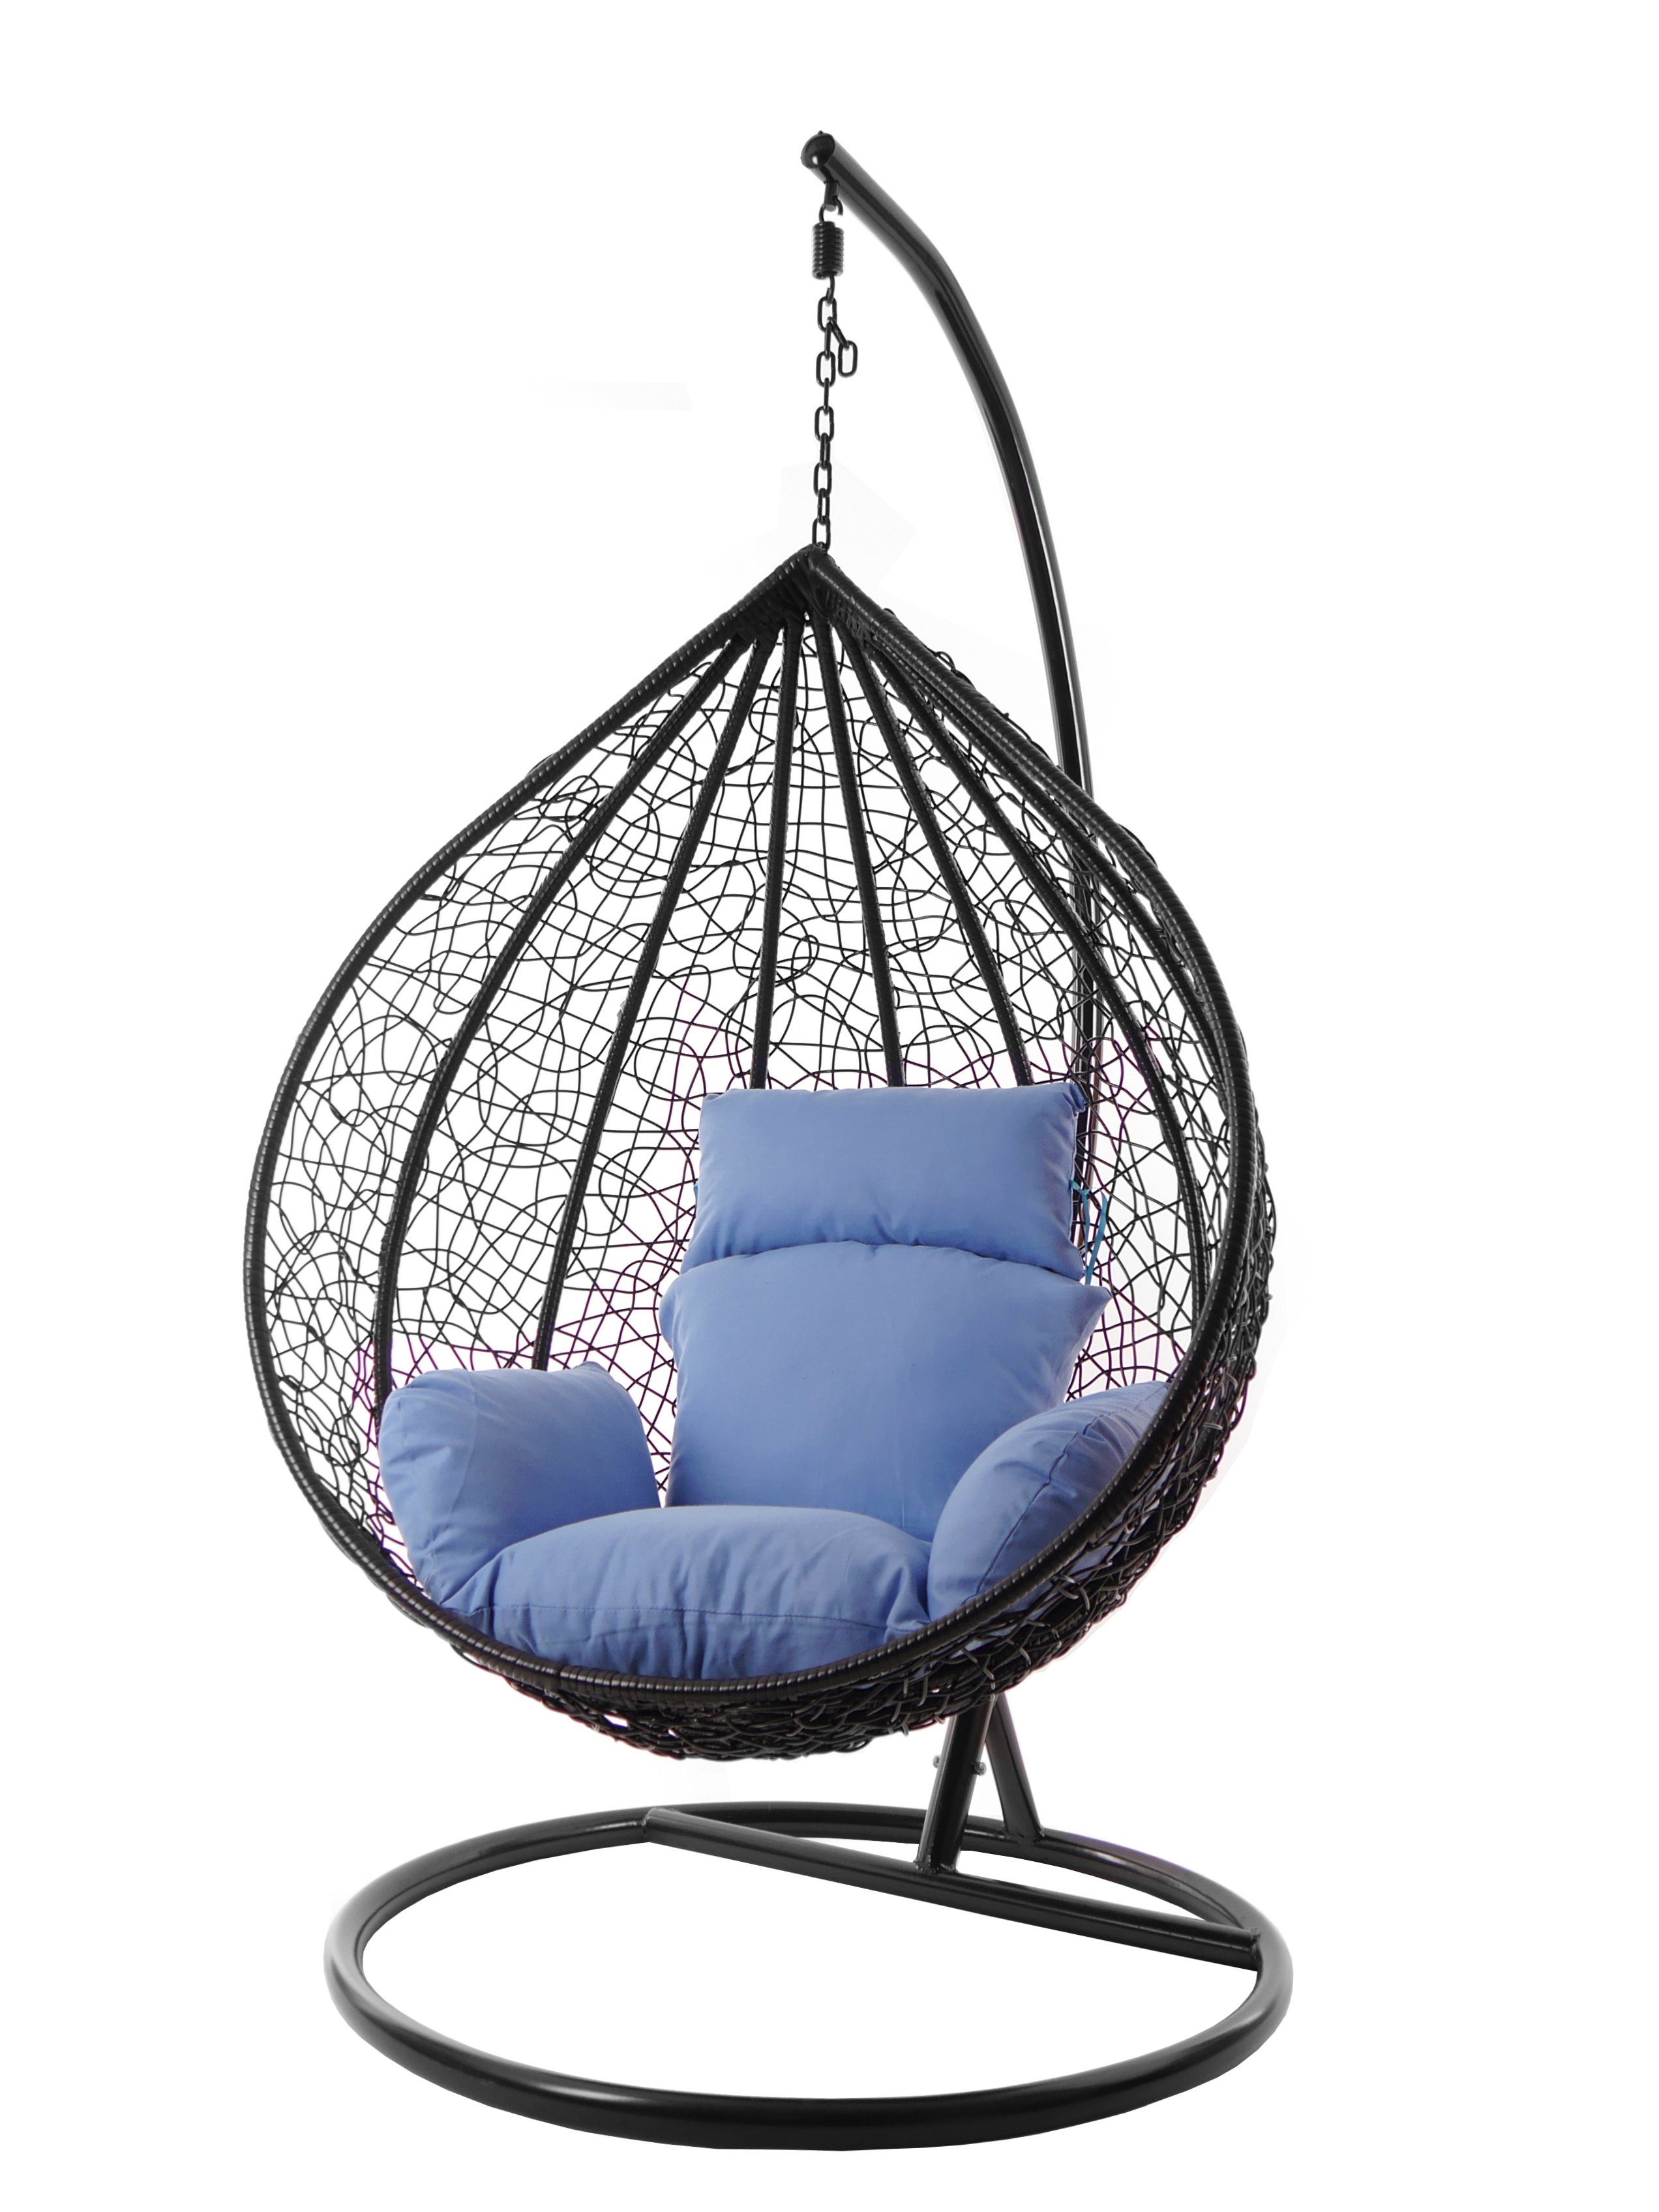 KIDEO Hängesessel Hängesessel MANACOR schwarz, XXL Swing Chair, edel, Gestell und Kissen inklusive, Nest-Kissen, verschiedene Farben königsblau (3070 royal blue)